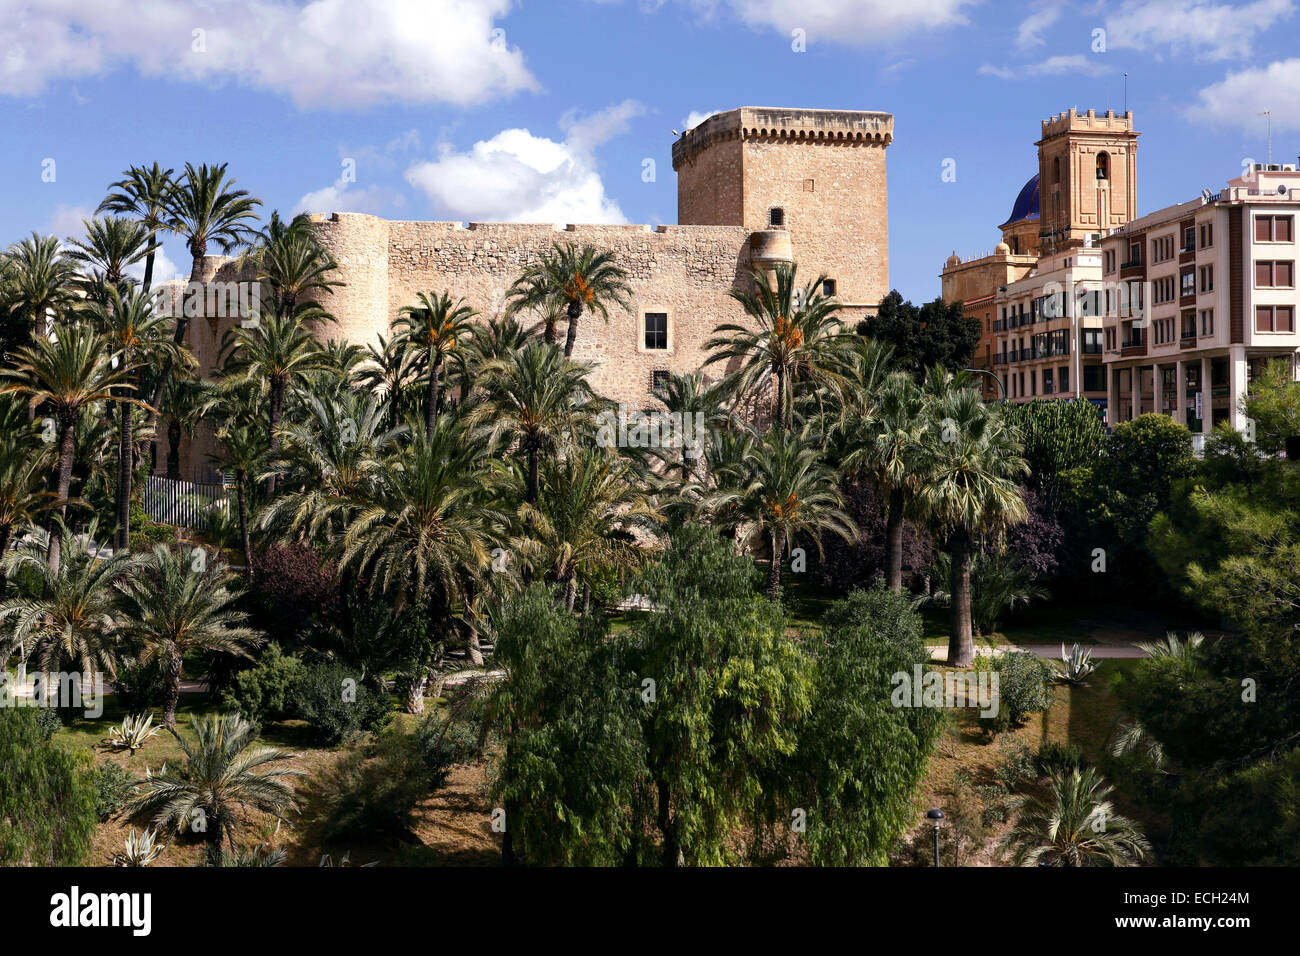 Palacio de Altamira/Altamira Palast und Palmeral de Elche Palm Grove, Elche, Elx, Alicante, Spanien. Stockfoto